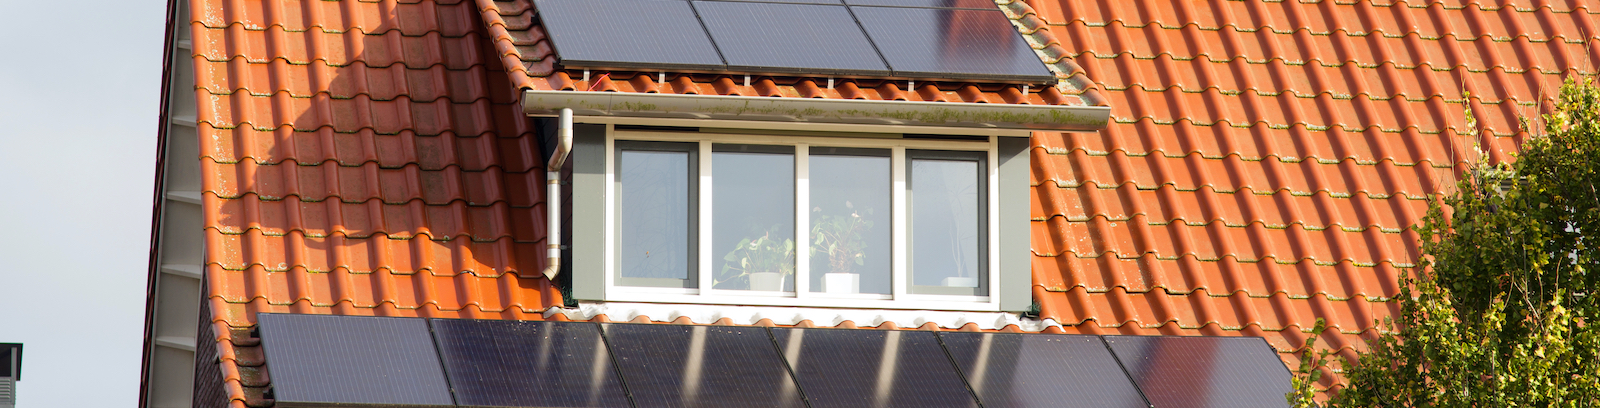 Hoeveel zonnepanelen passen er op mijn dak